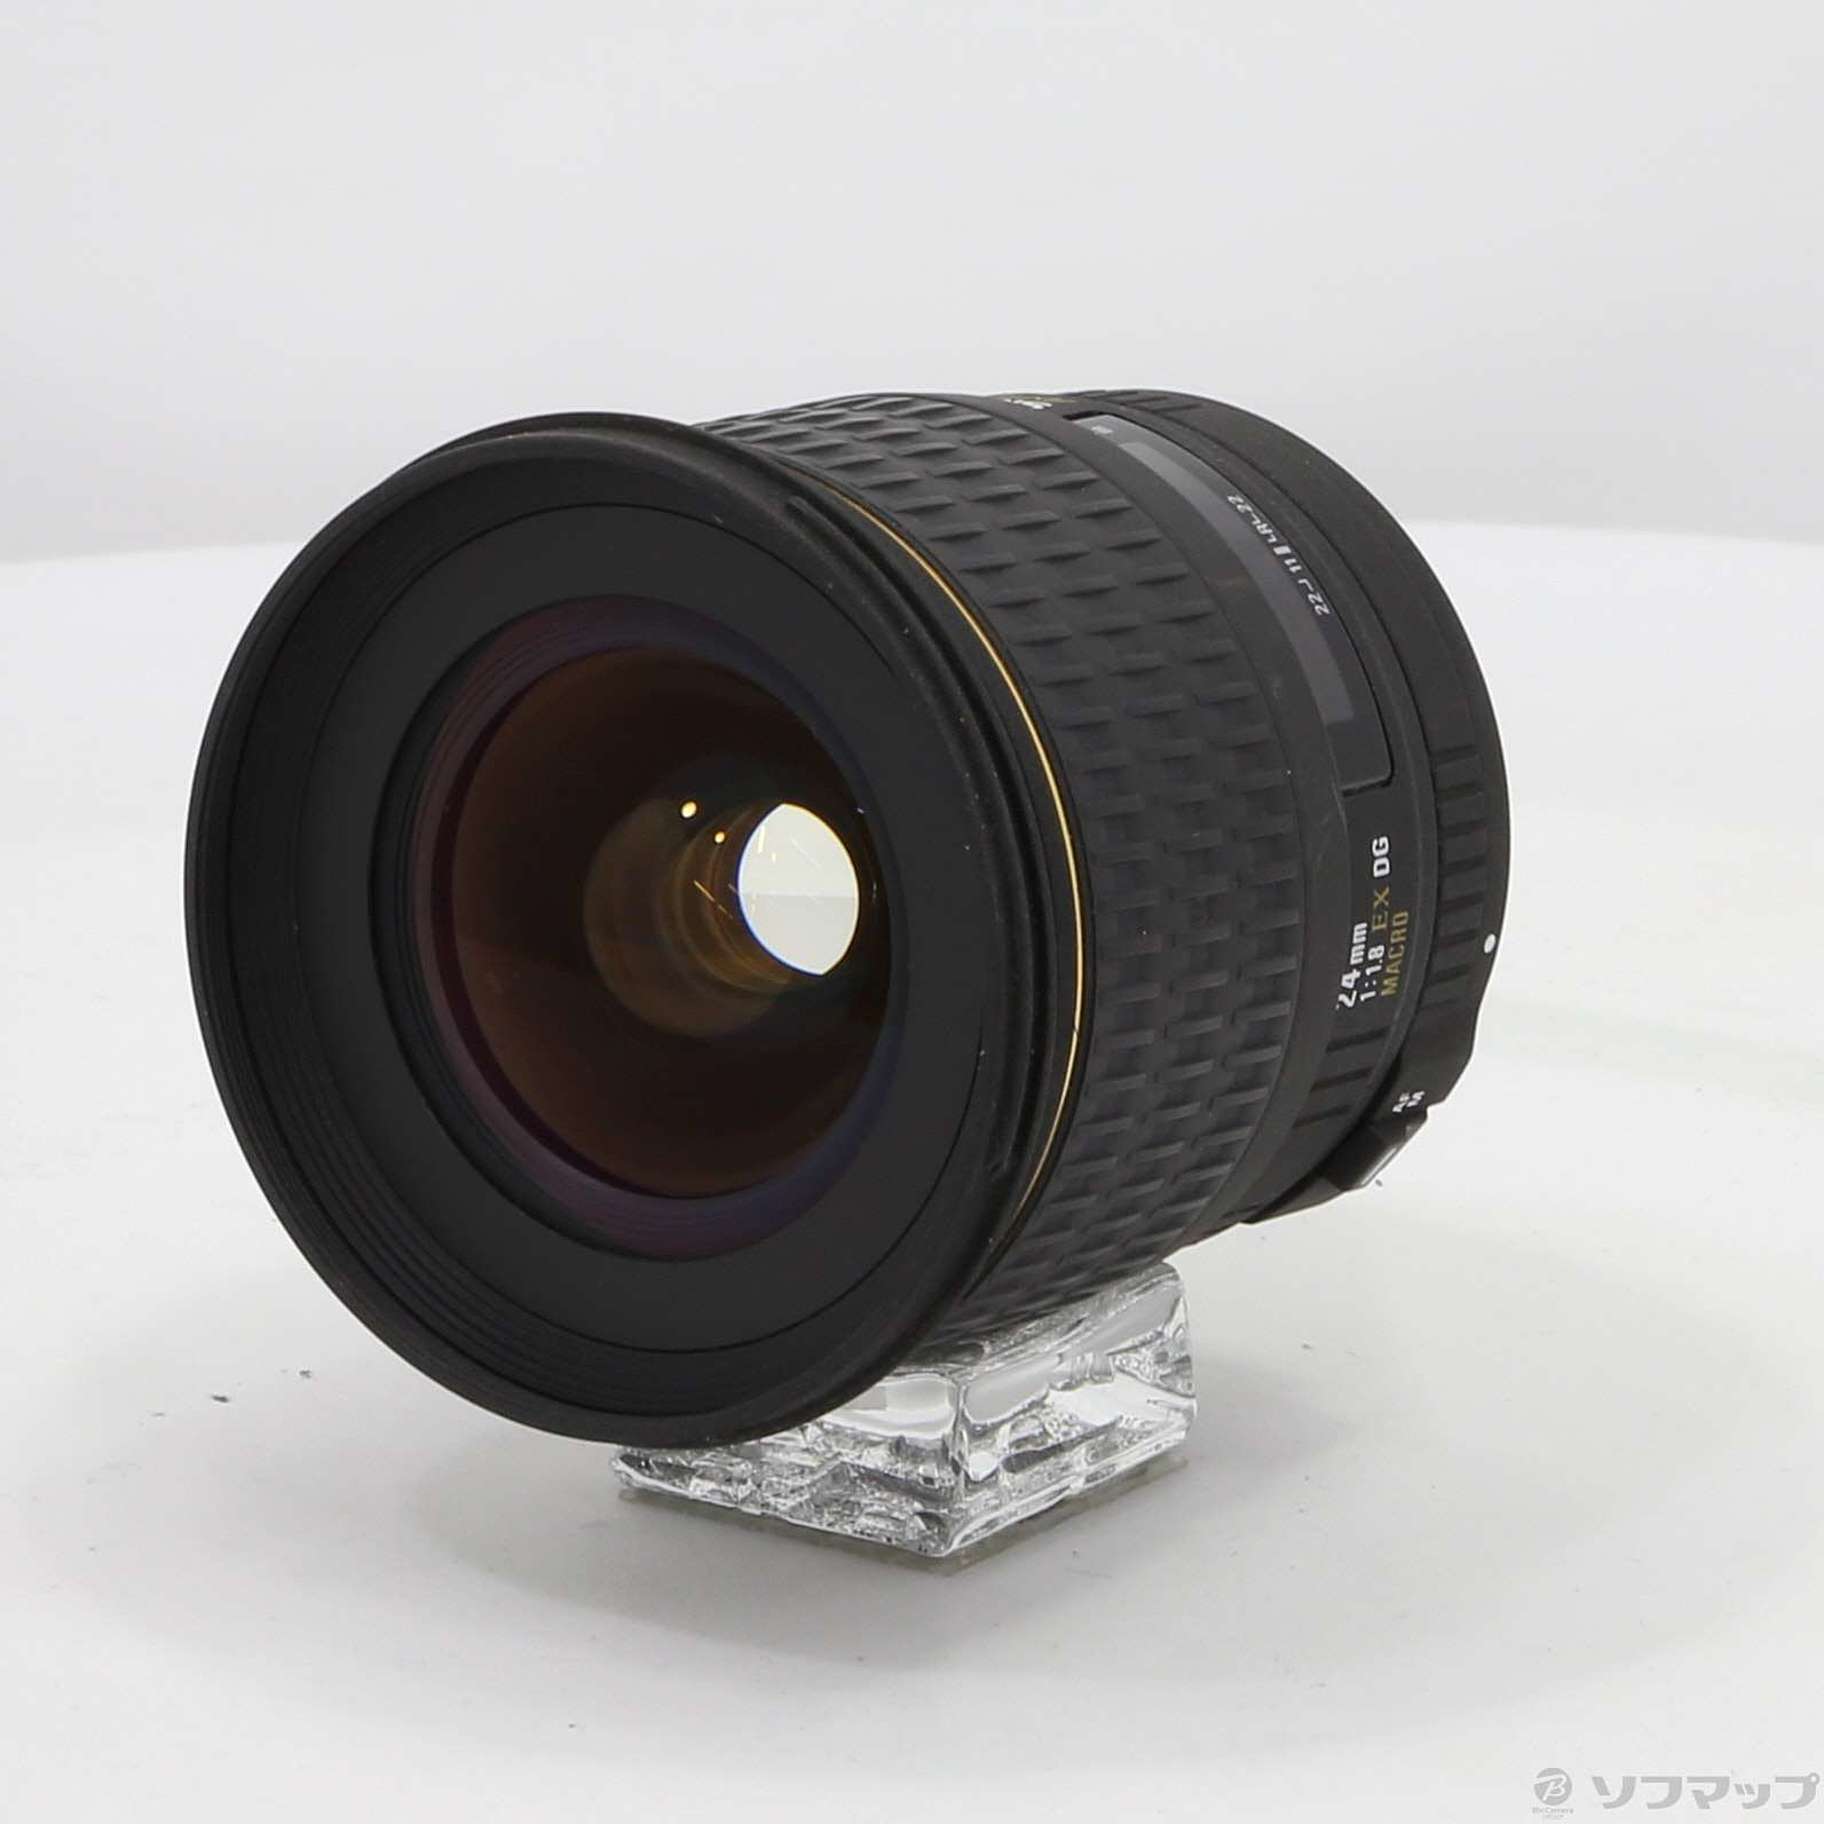 中古】AF 24mm F1.8 EX DG ASPHERICAL MACRO (Canon用) (レンズ